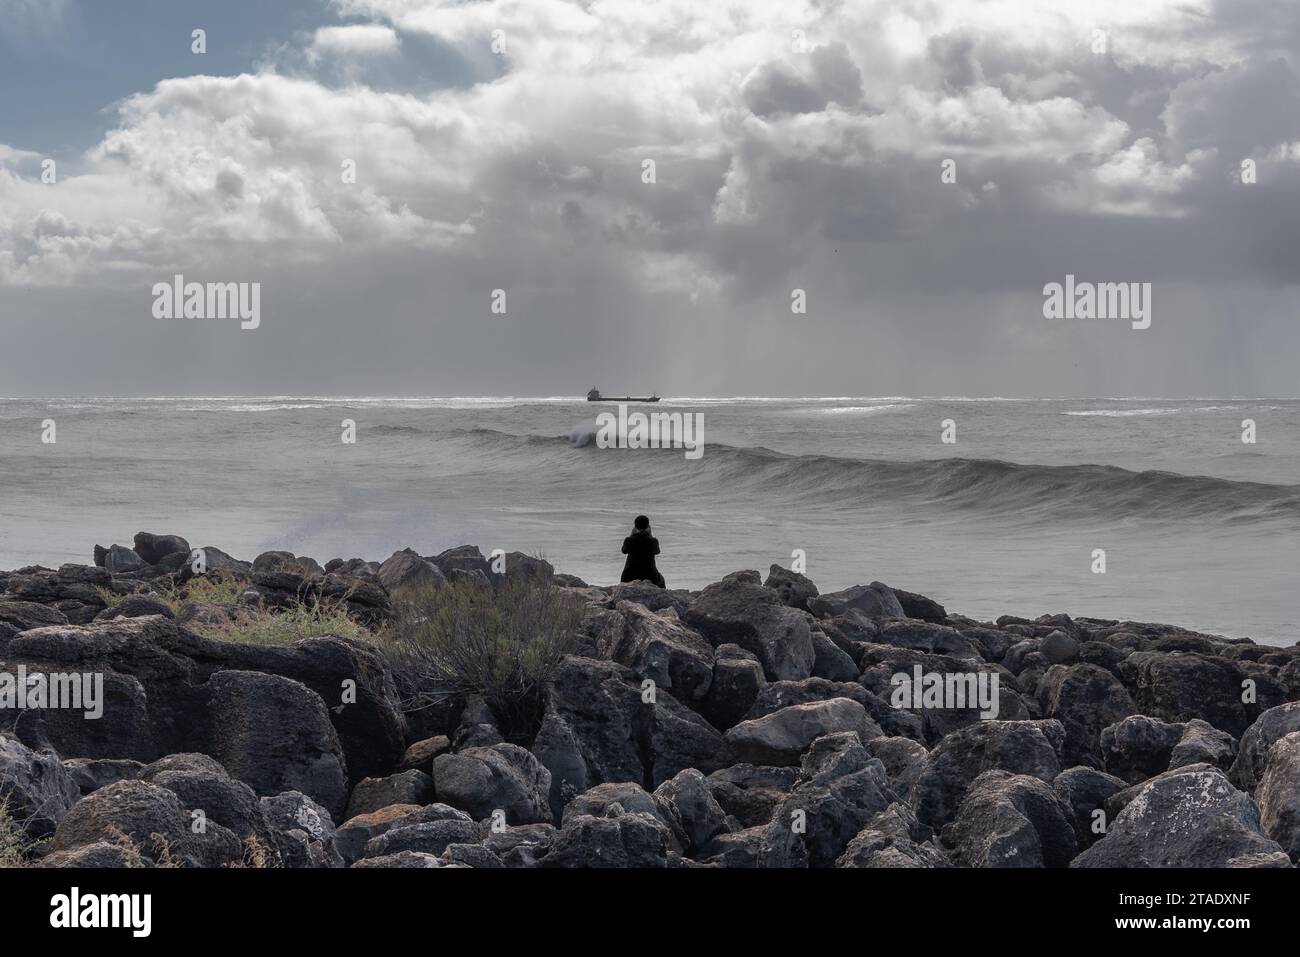 La silhouette d'une seule personne assise sur les rochers au bord de l'océan regardant un navire porte-conteneurs et de grandes vagues qui roulent dans l'océan Atlantique Banque D'Images